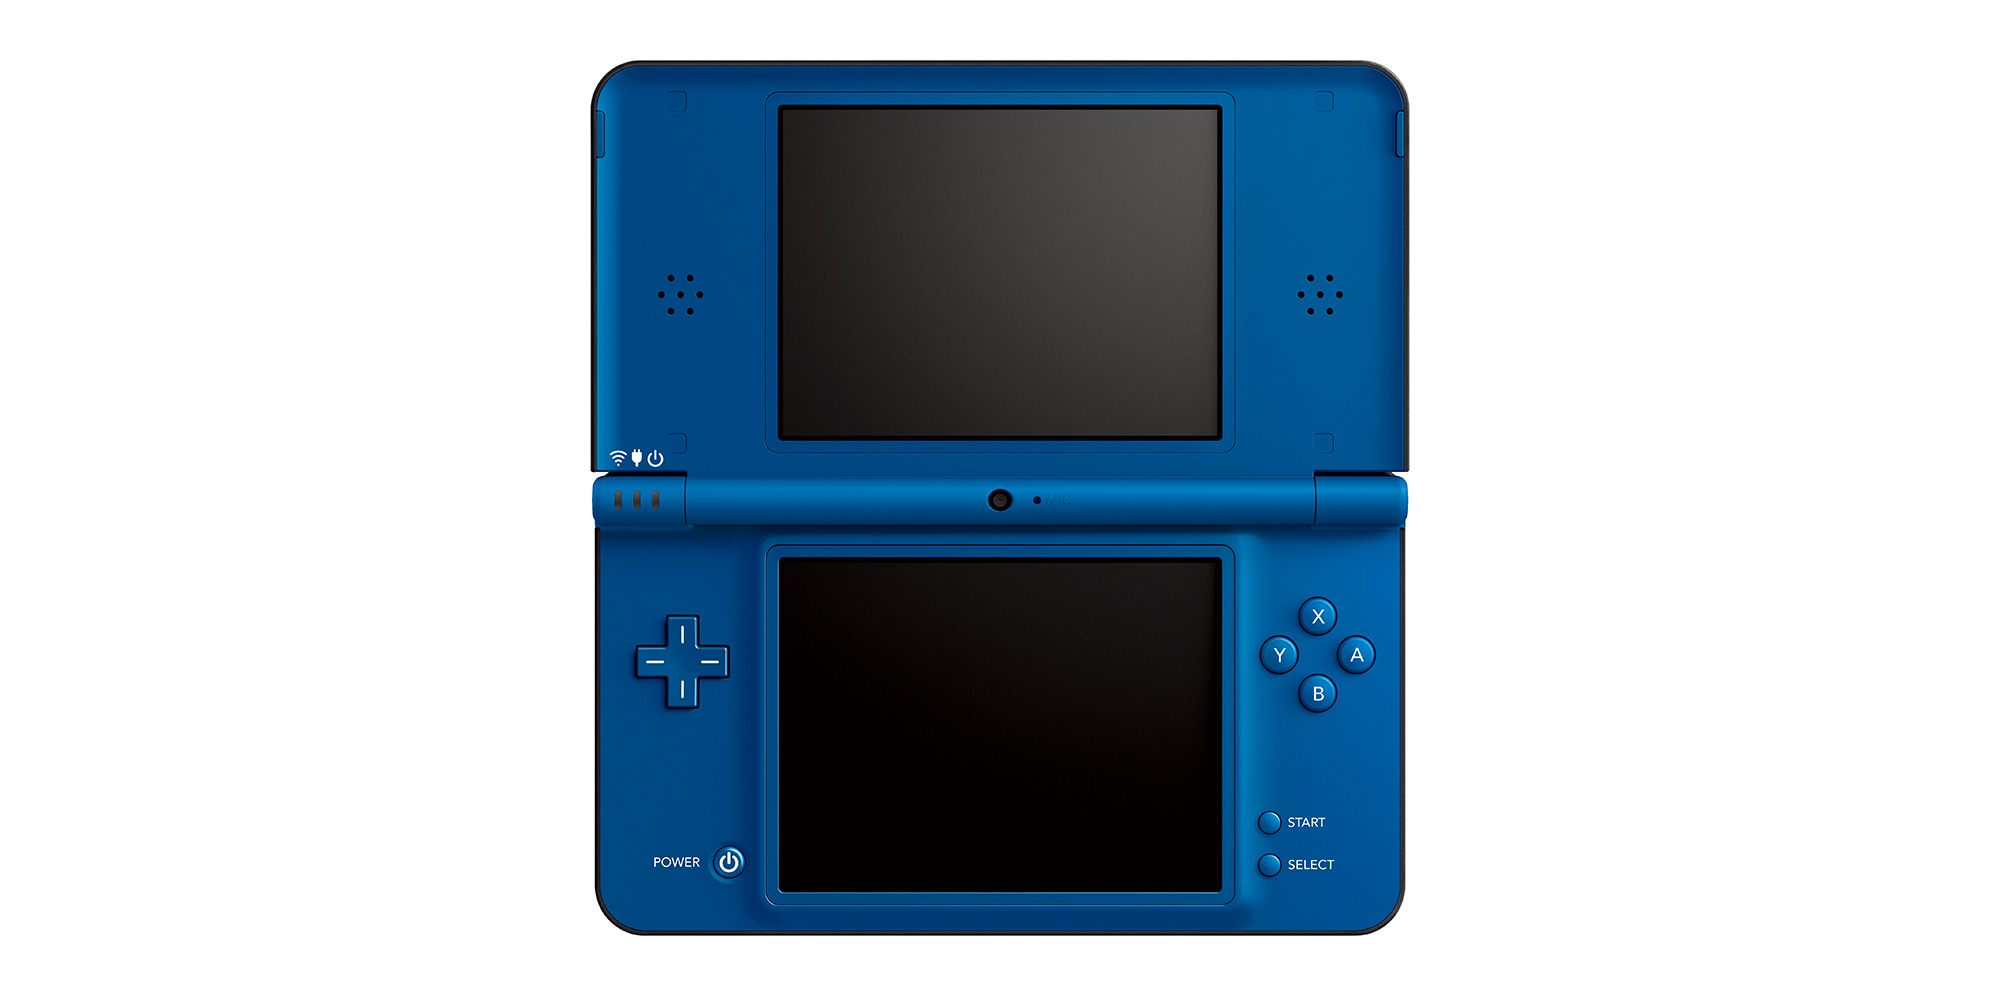 detaljer linse ufravigelige Nintendo DSi XL | Nintendo UK's official site | Nintendo DS | Nintendo